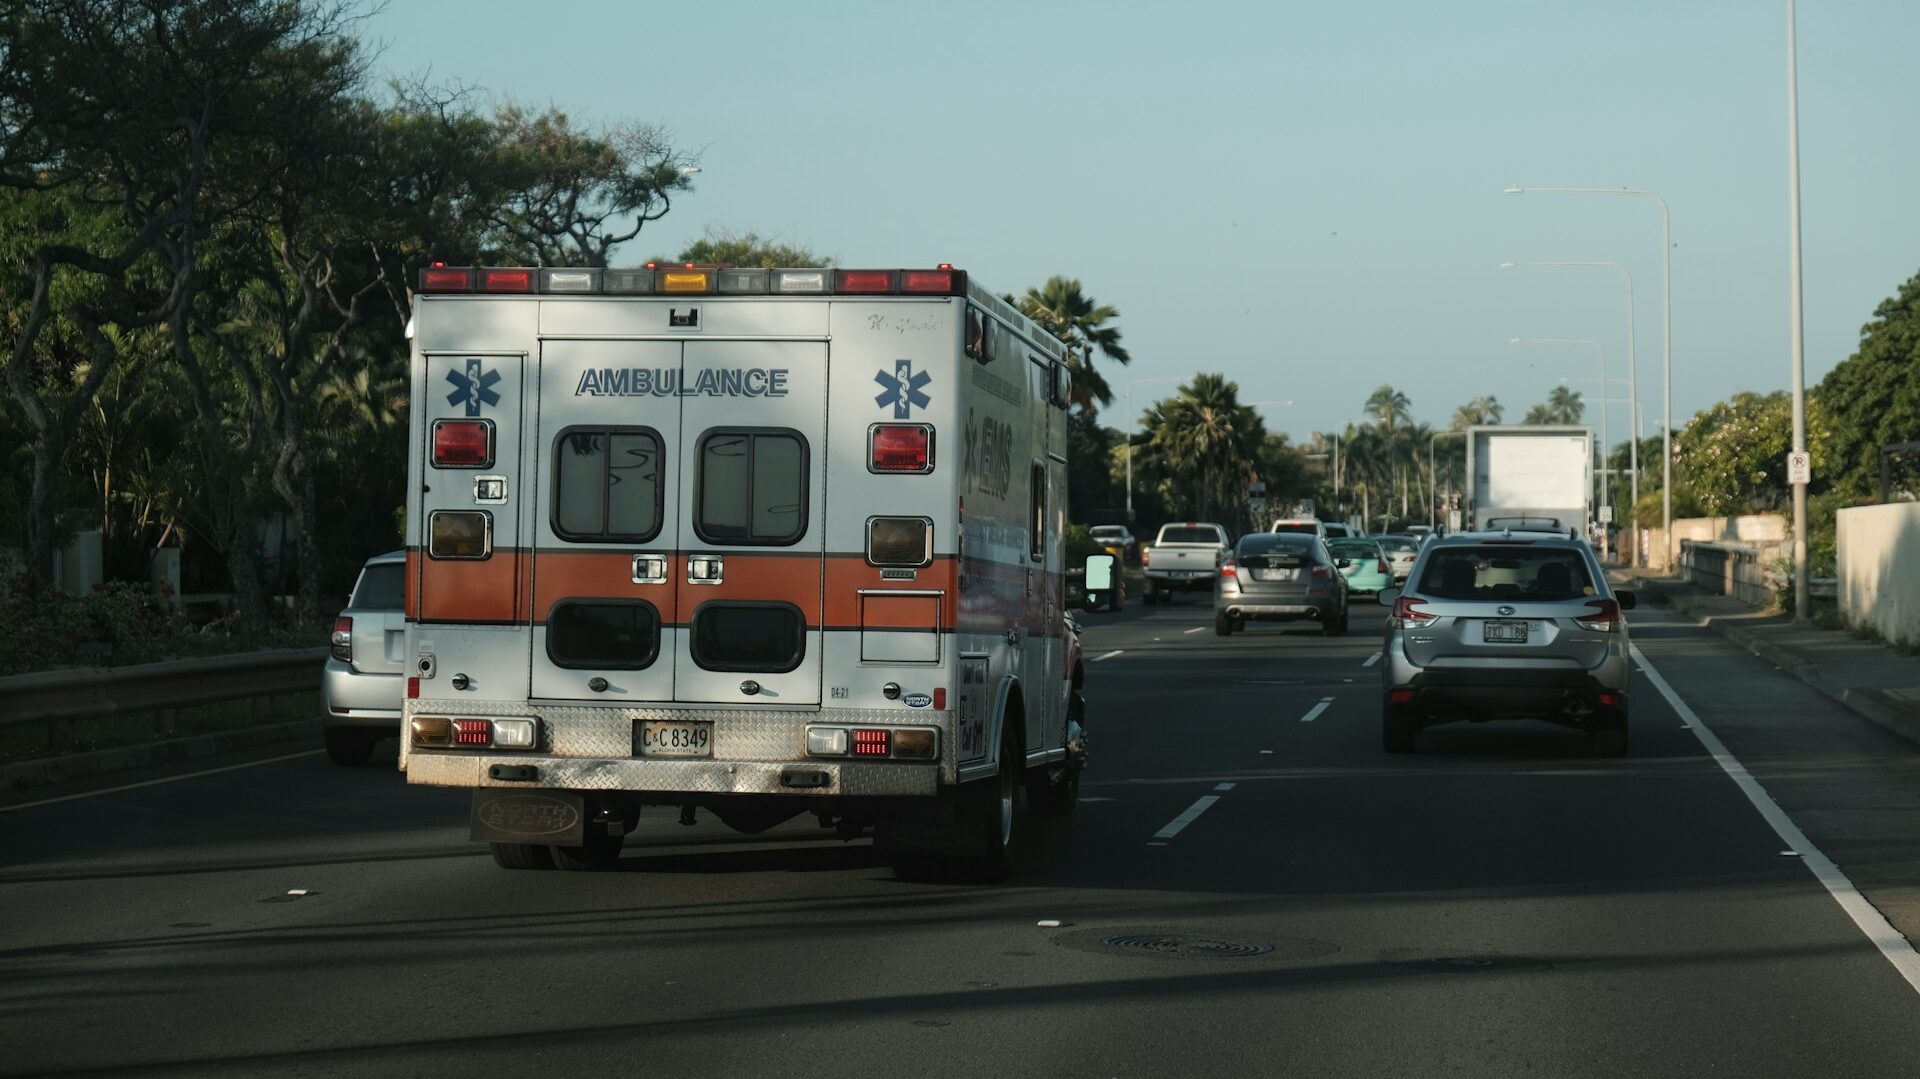 道路を走る救急車を撮影した写真。